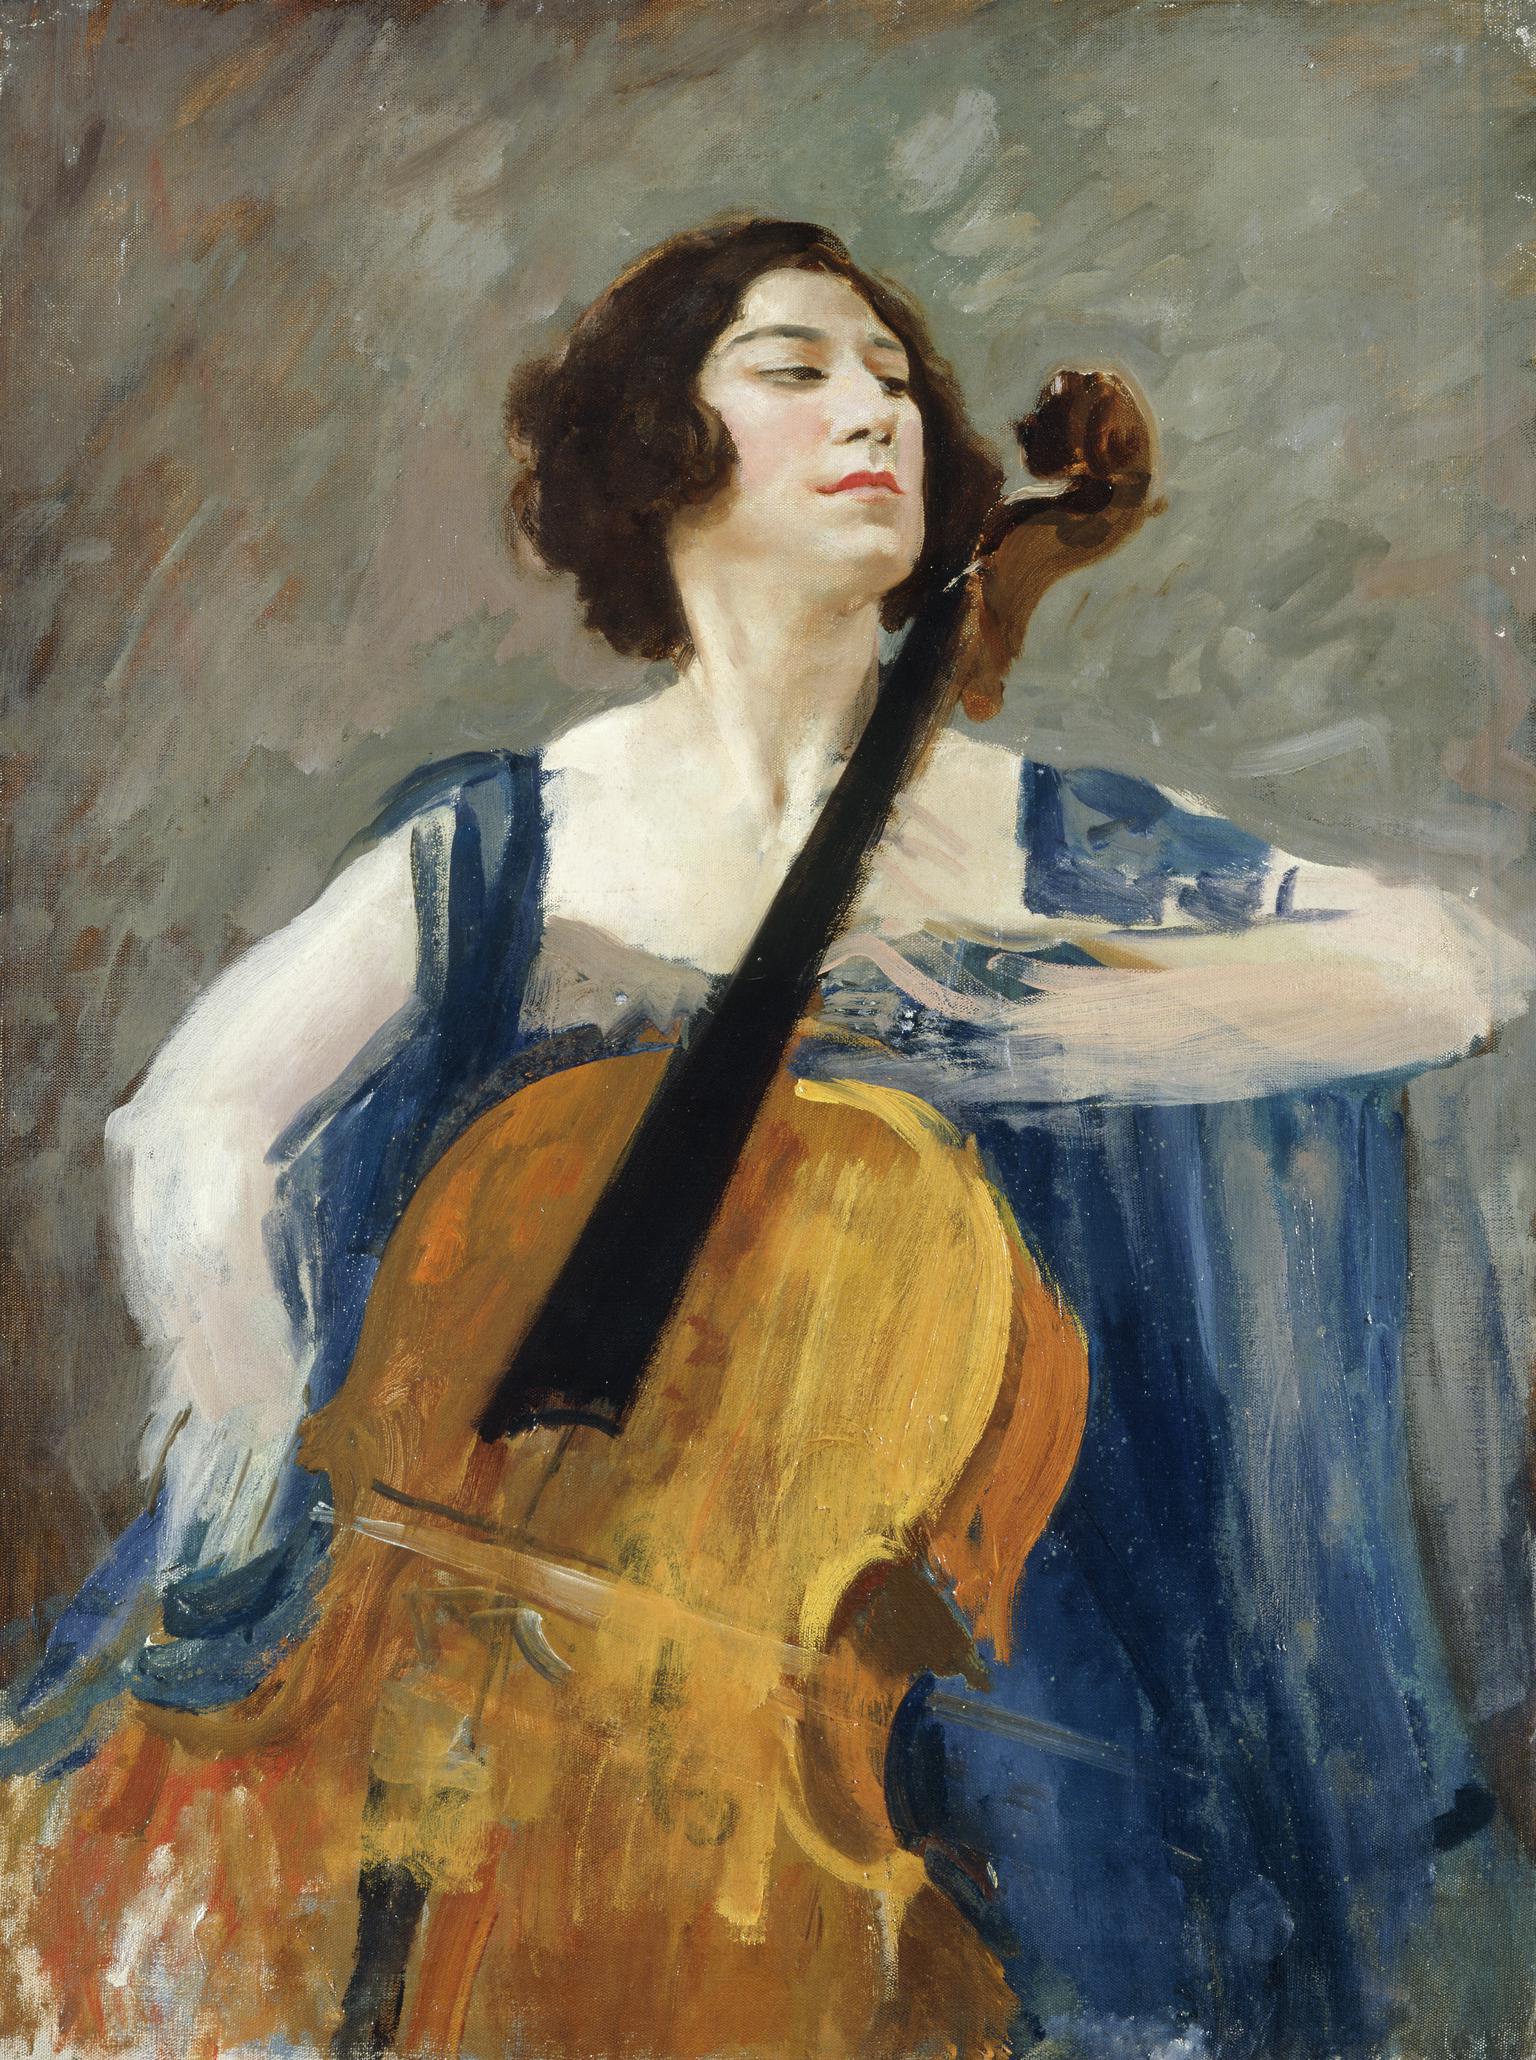 Guilhermina Suggia (1885-1950)